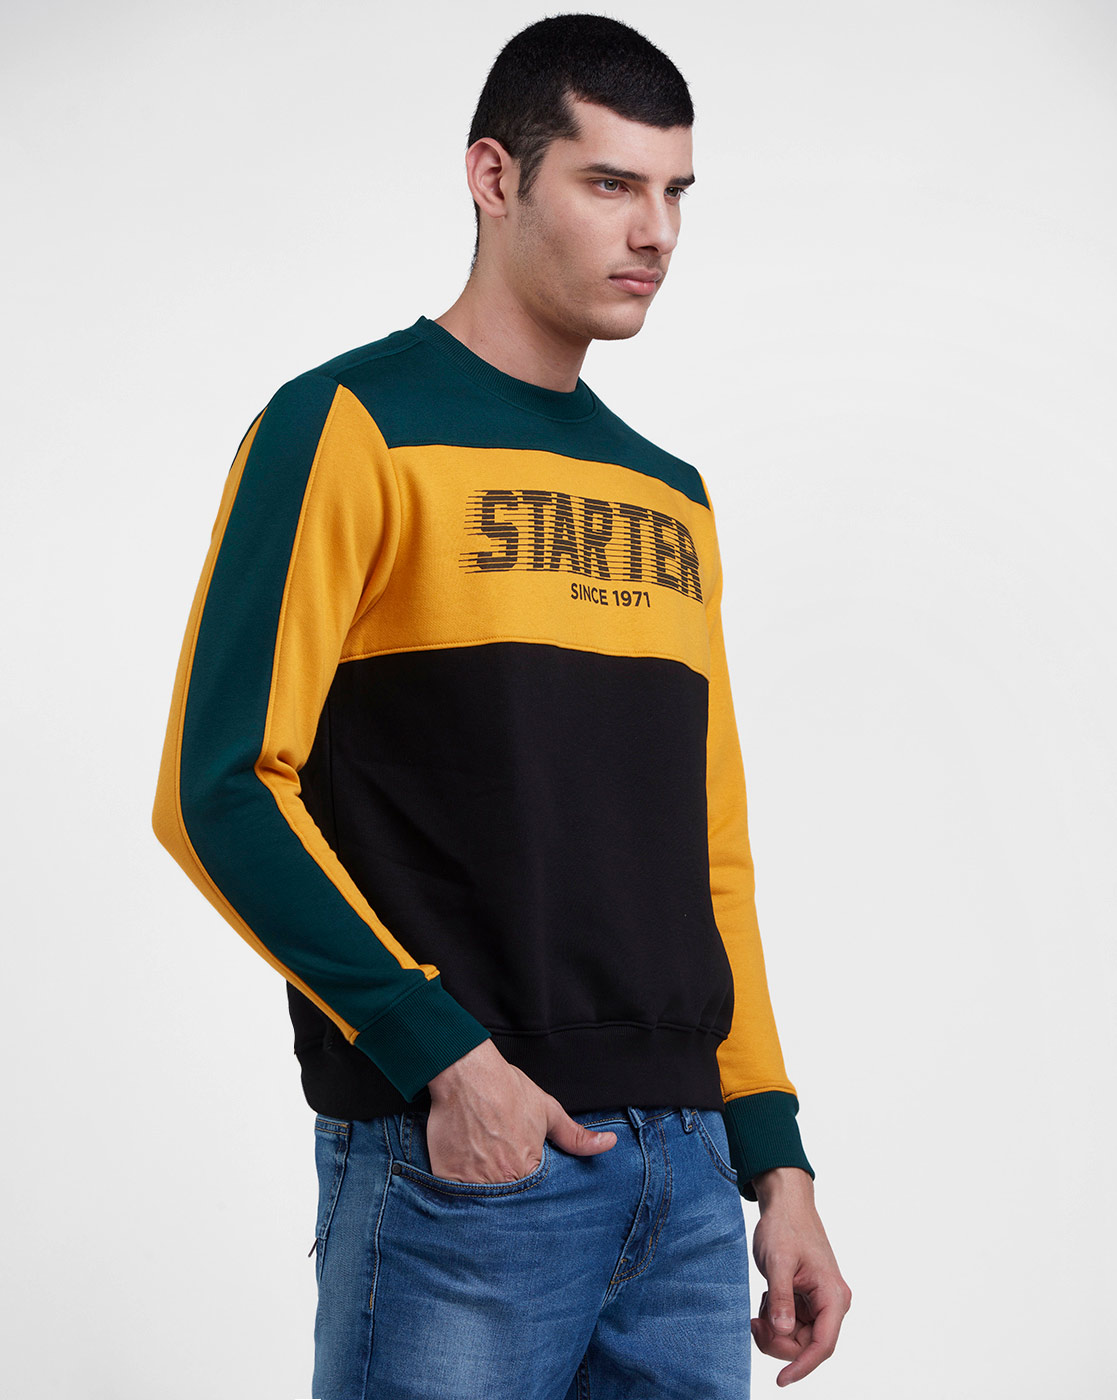 Starter Men Color Block Yellow Sweatshirt